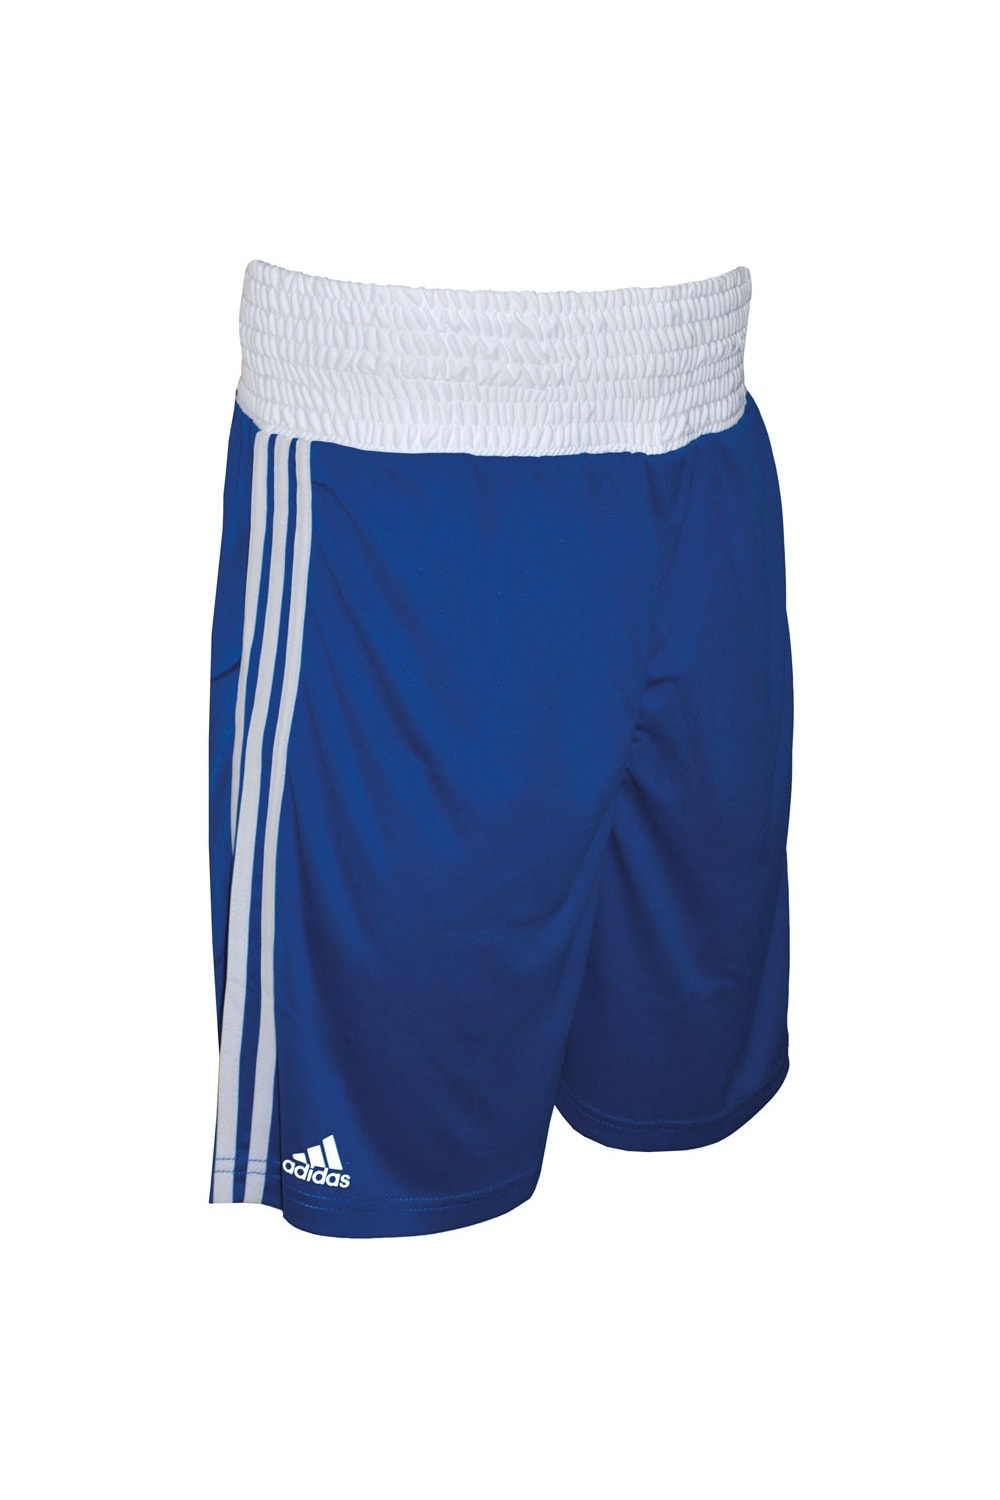 Adidas Unisex Adult Boxing Shorts (Royal Blue)